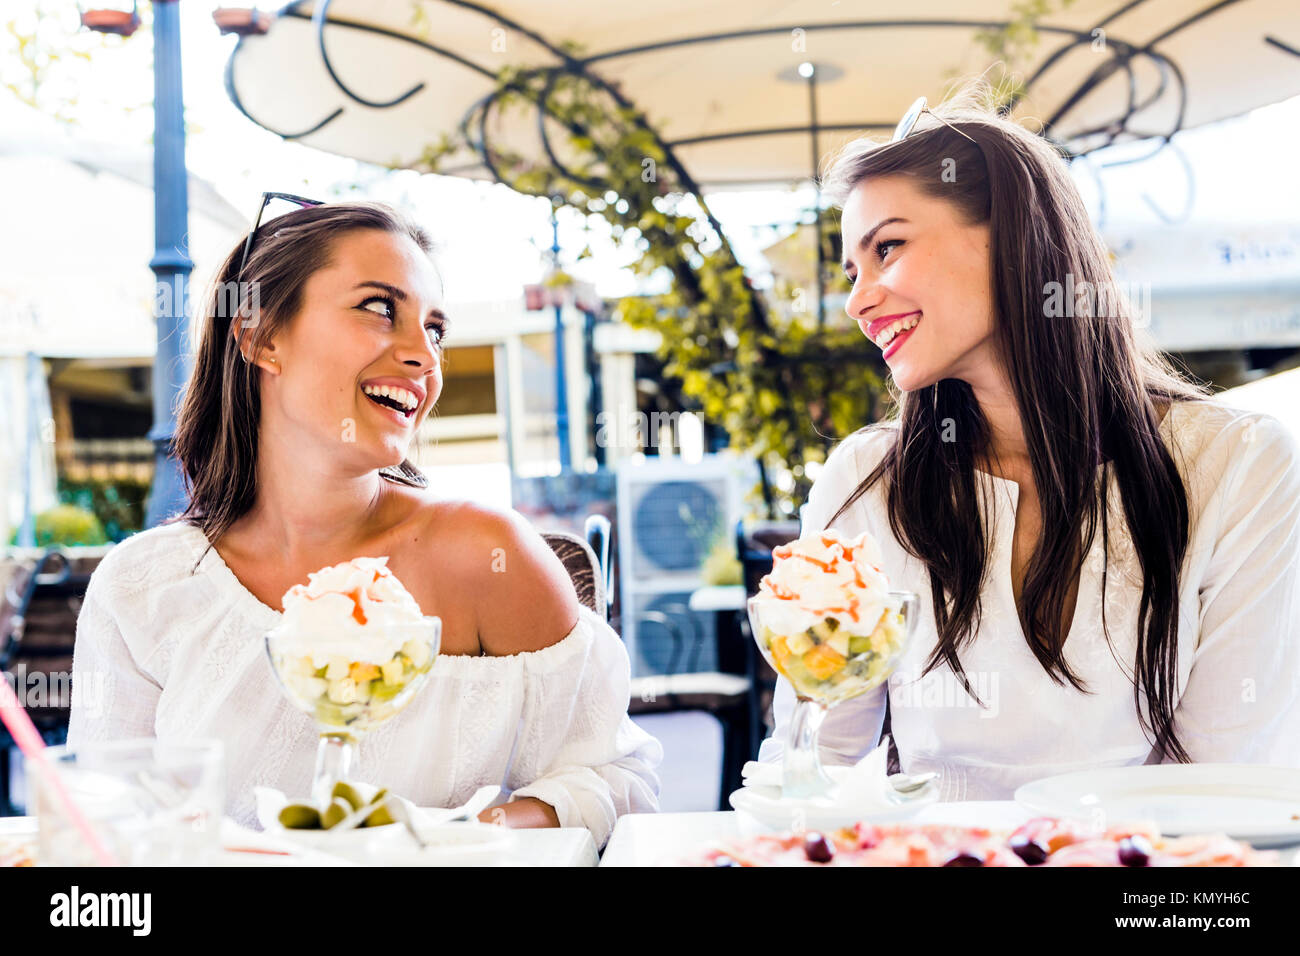 Zwei schöne junge Frauen lächelnd und mit einem Obstsalat in Einem Stockfoto